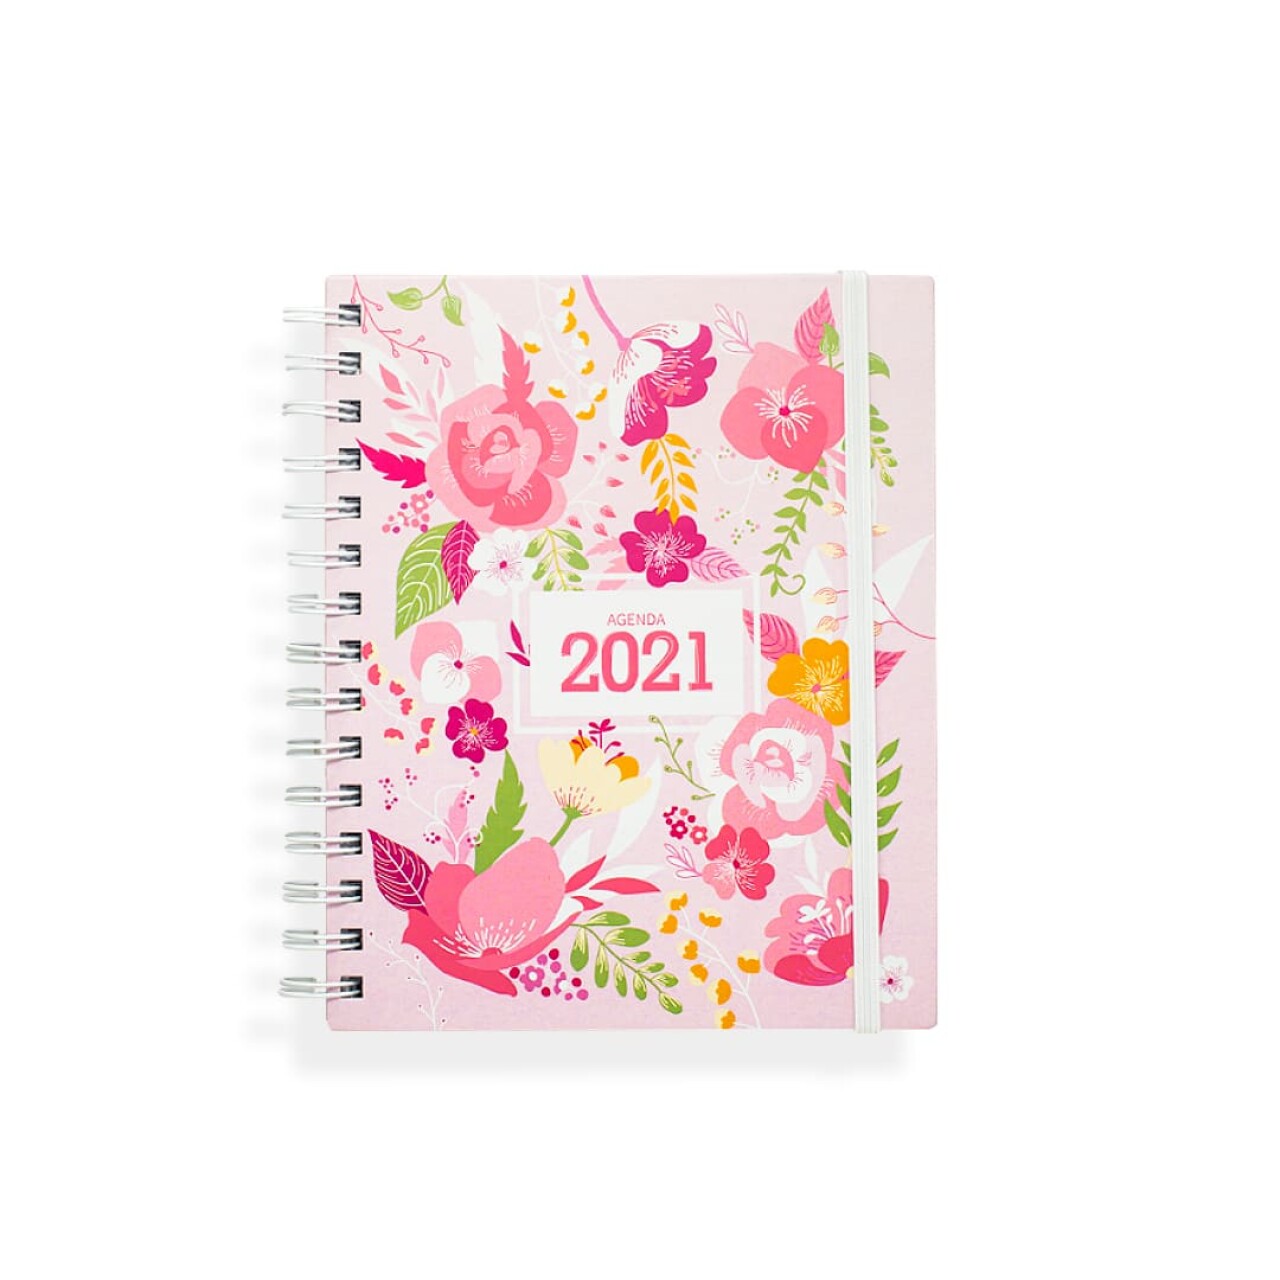 agenda-2021-hortensia-juana.jpg